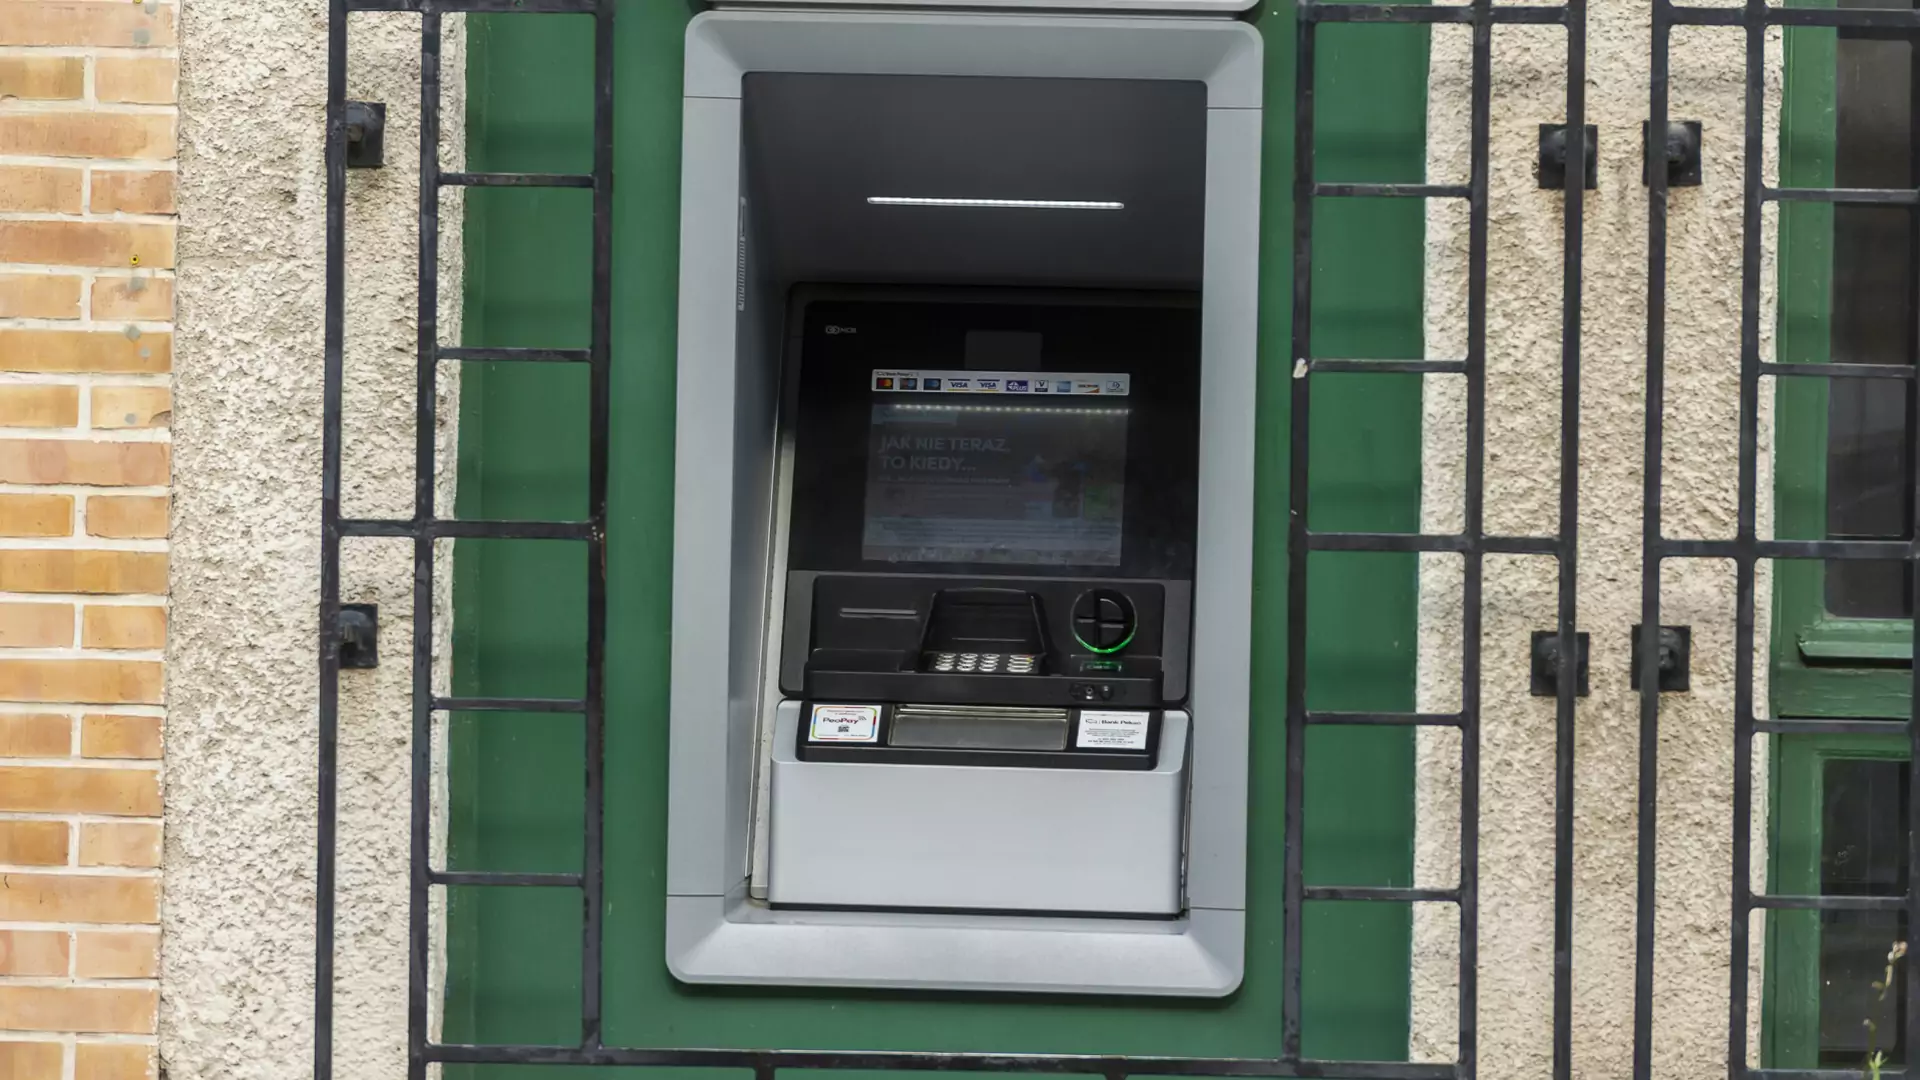 Złodzieje we Wrocławiu próbowali wysadzić bankomat. Nie wyszło